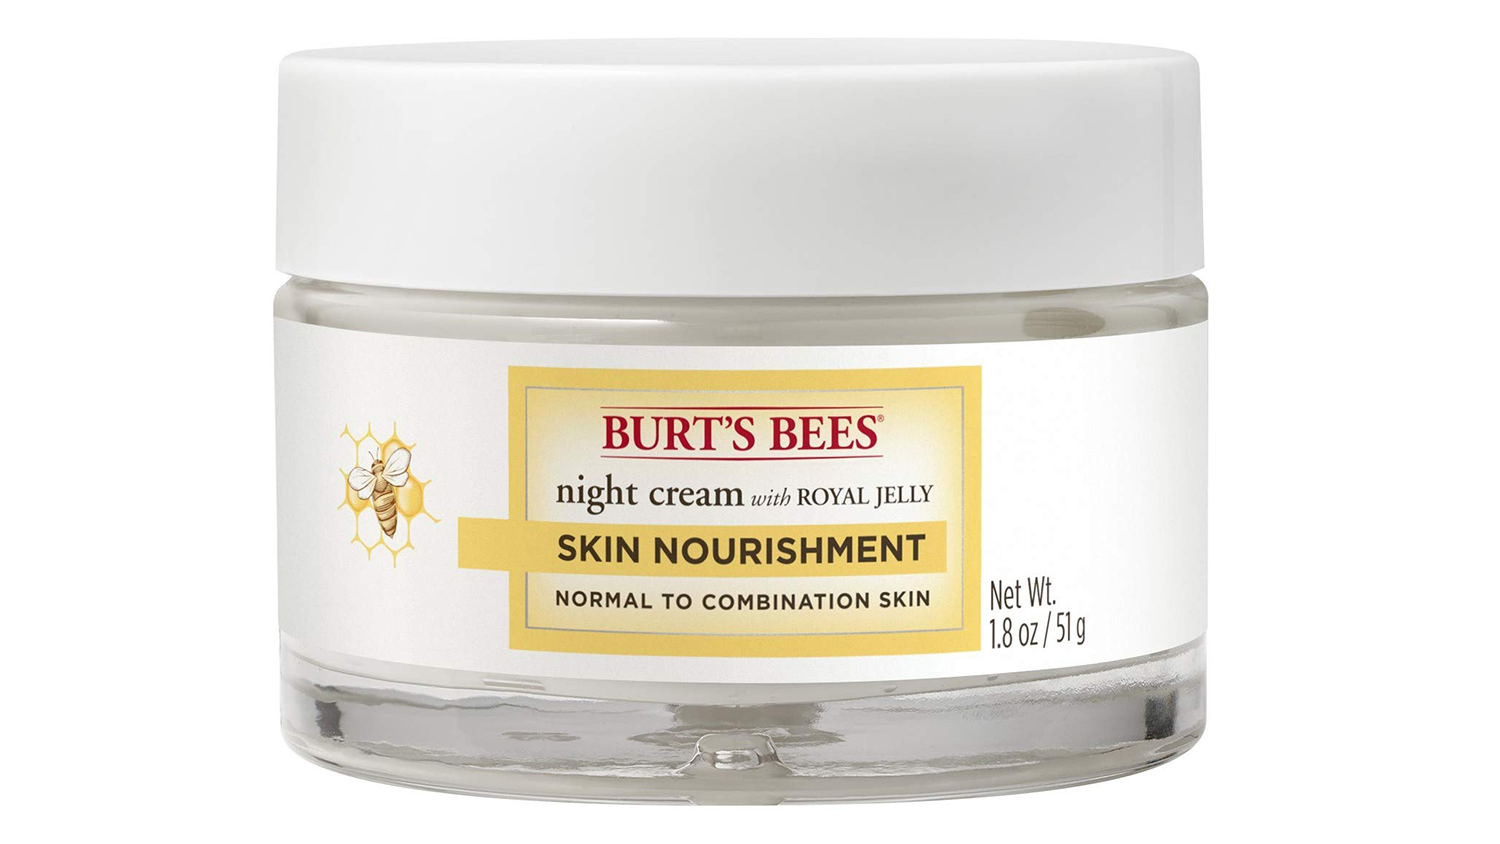 burt's bees skin nourishment night cream